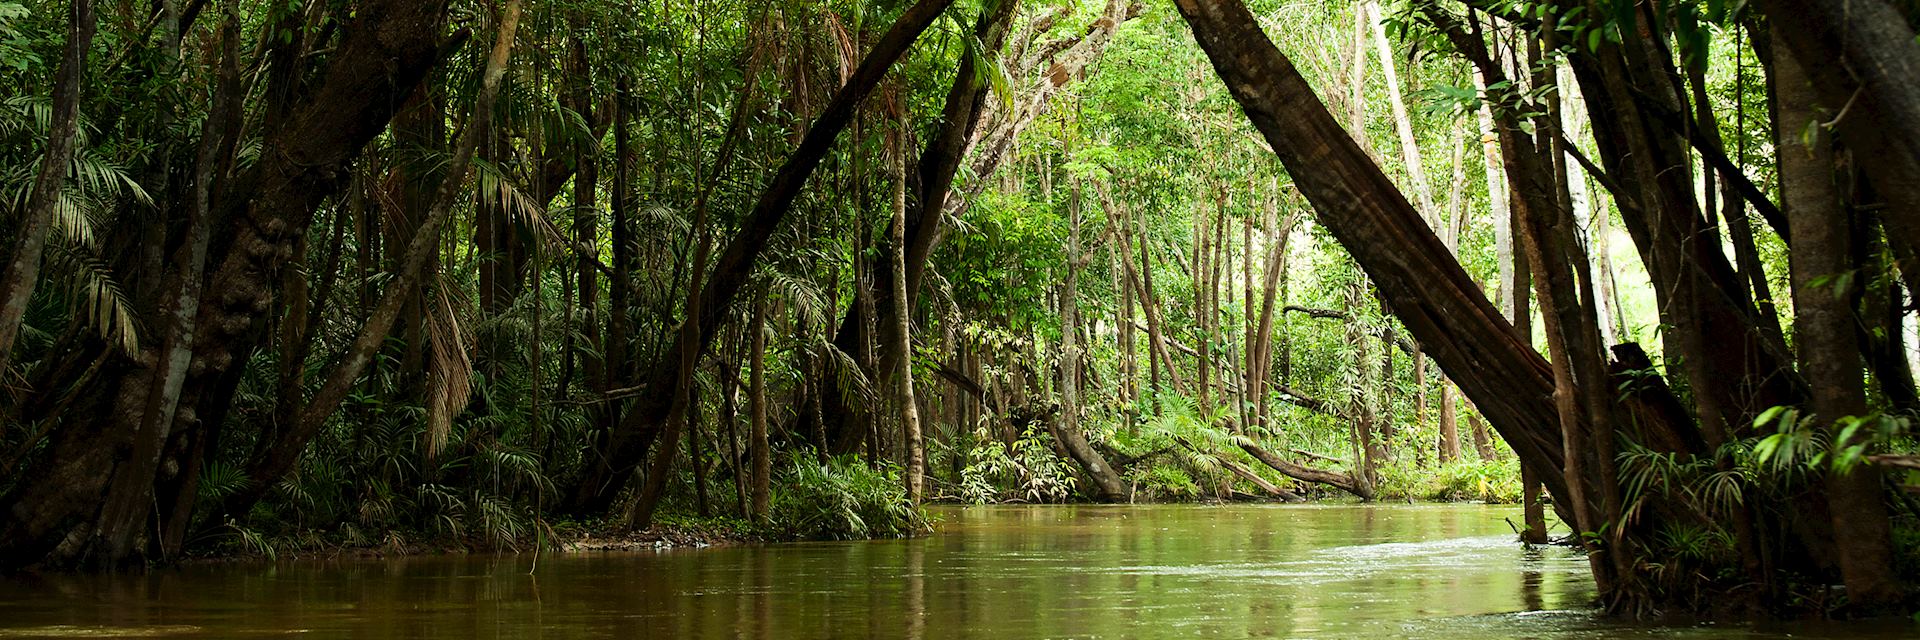 Creek in the Brazilian Amazon